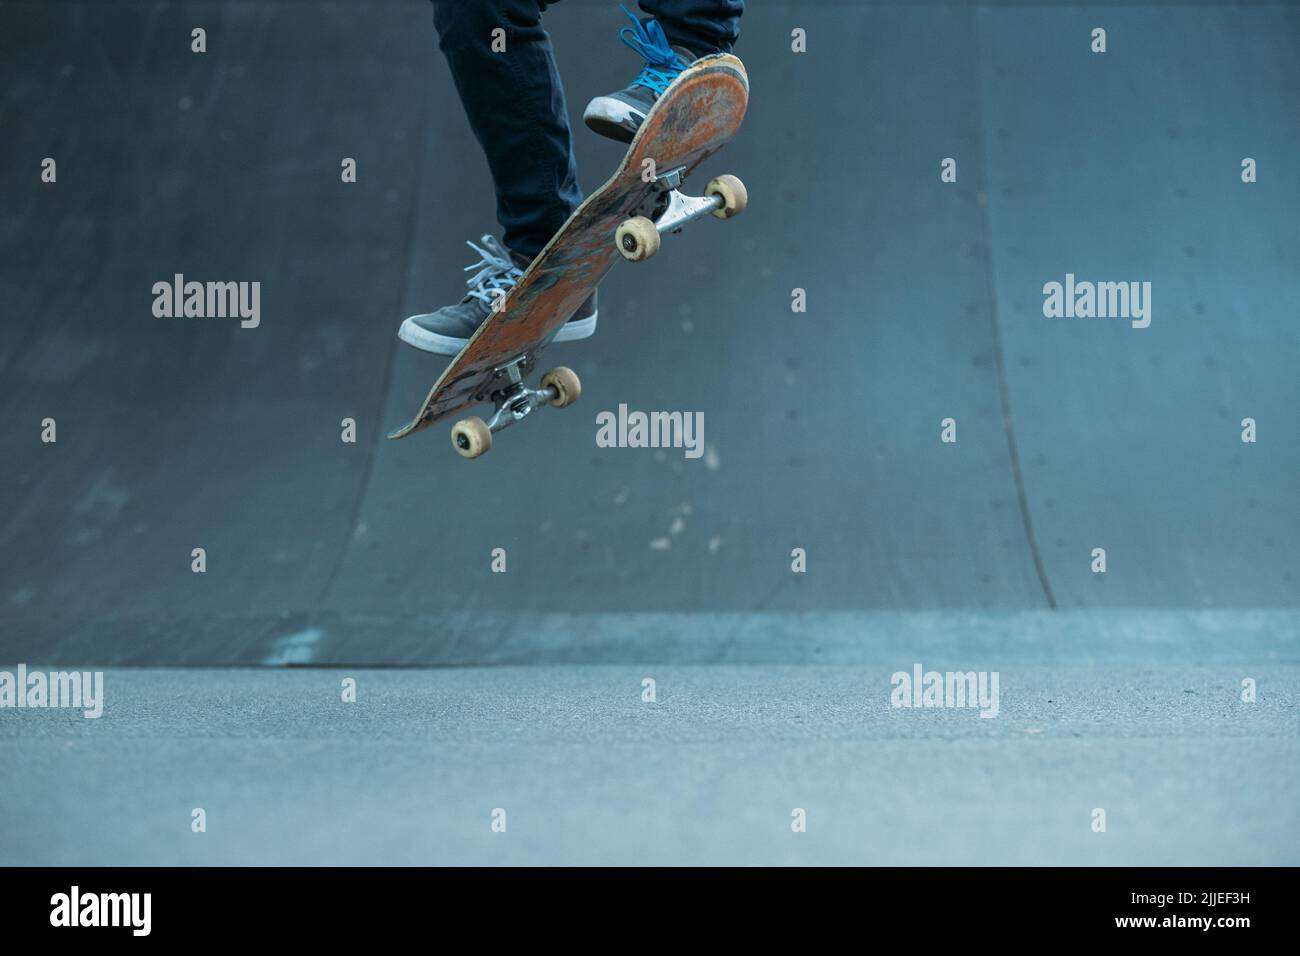 skateboarder action extrême style de vie ramp trick Banque D'Images